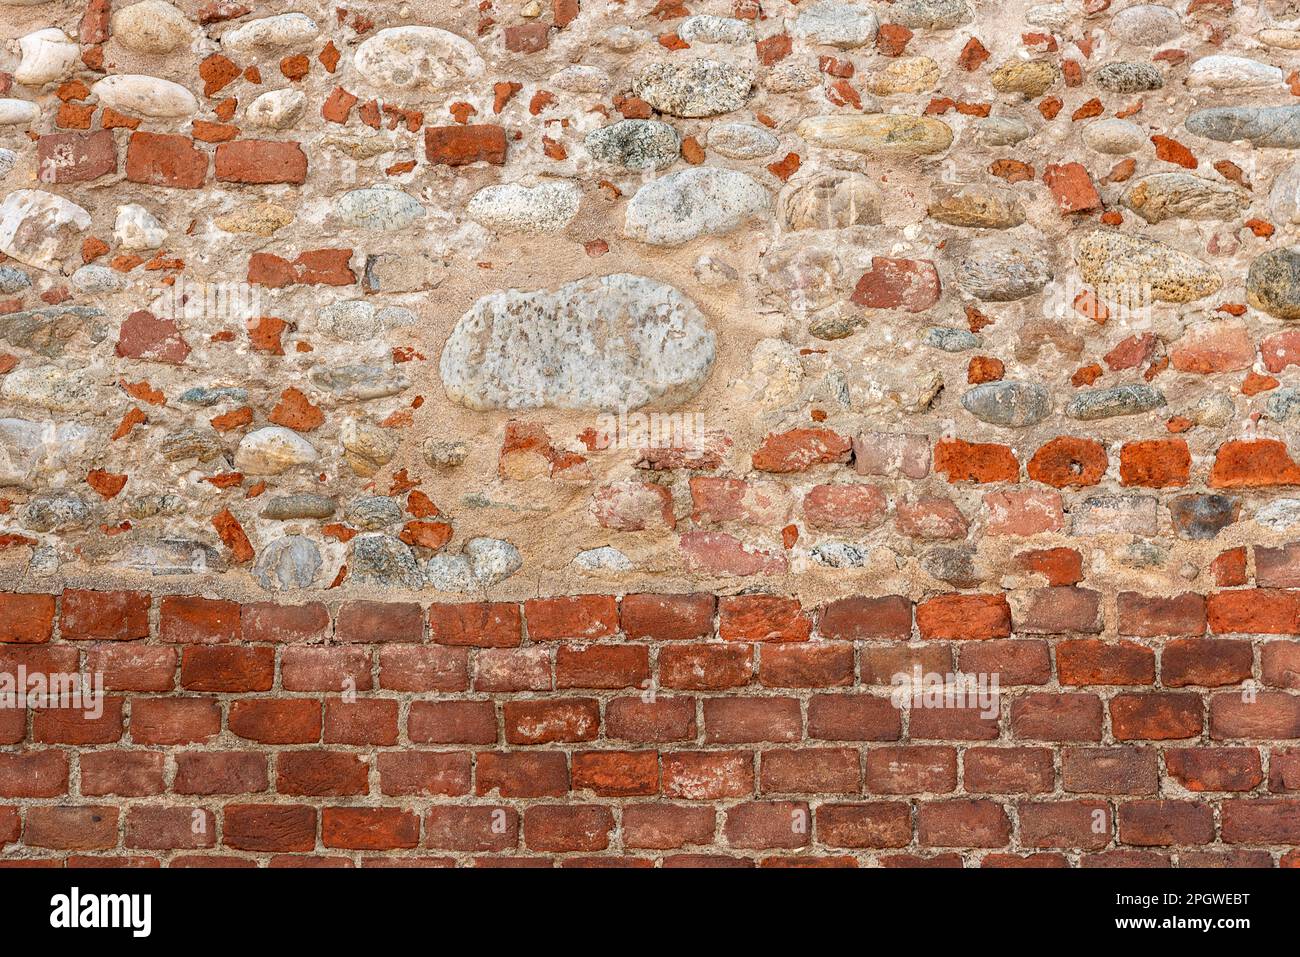 Wandtextur mit regelmäßiger roter Ziegelbasis und über der Wand mit Stücken alter roter Ziegelsteine vermischt mit freiliegenden runden Flusssteinen. Kopierbereich im Hintergrund Stockfoto